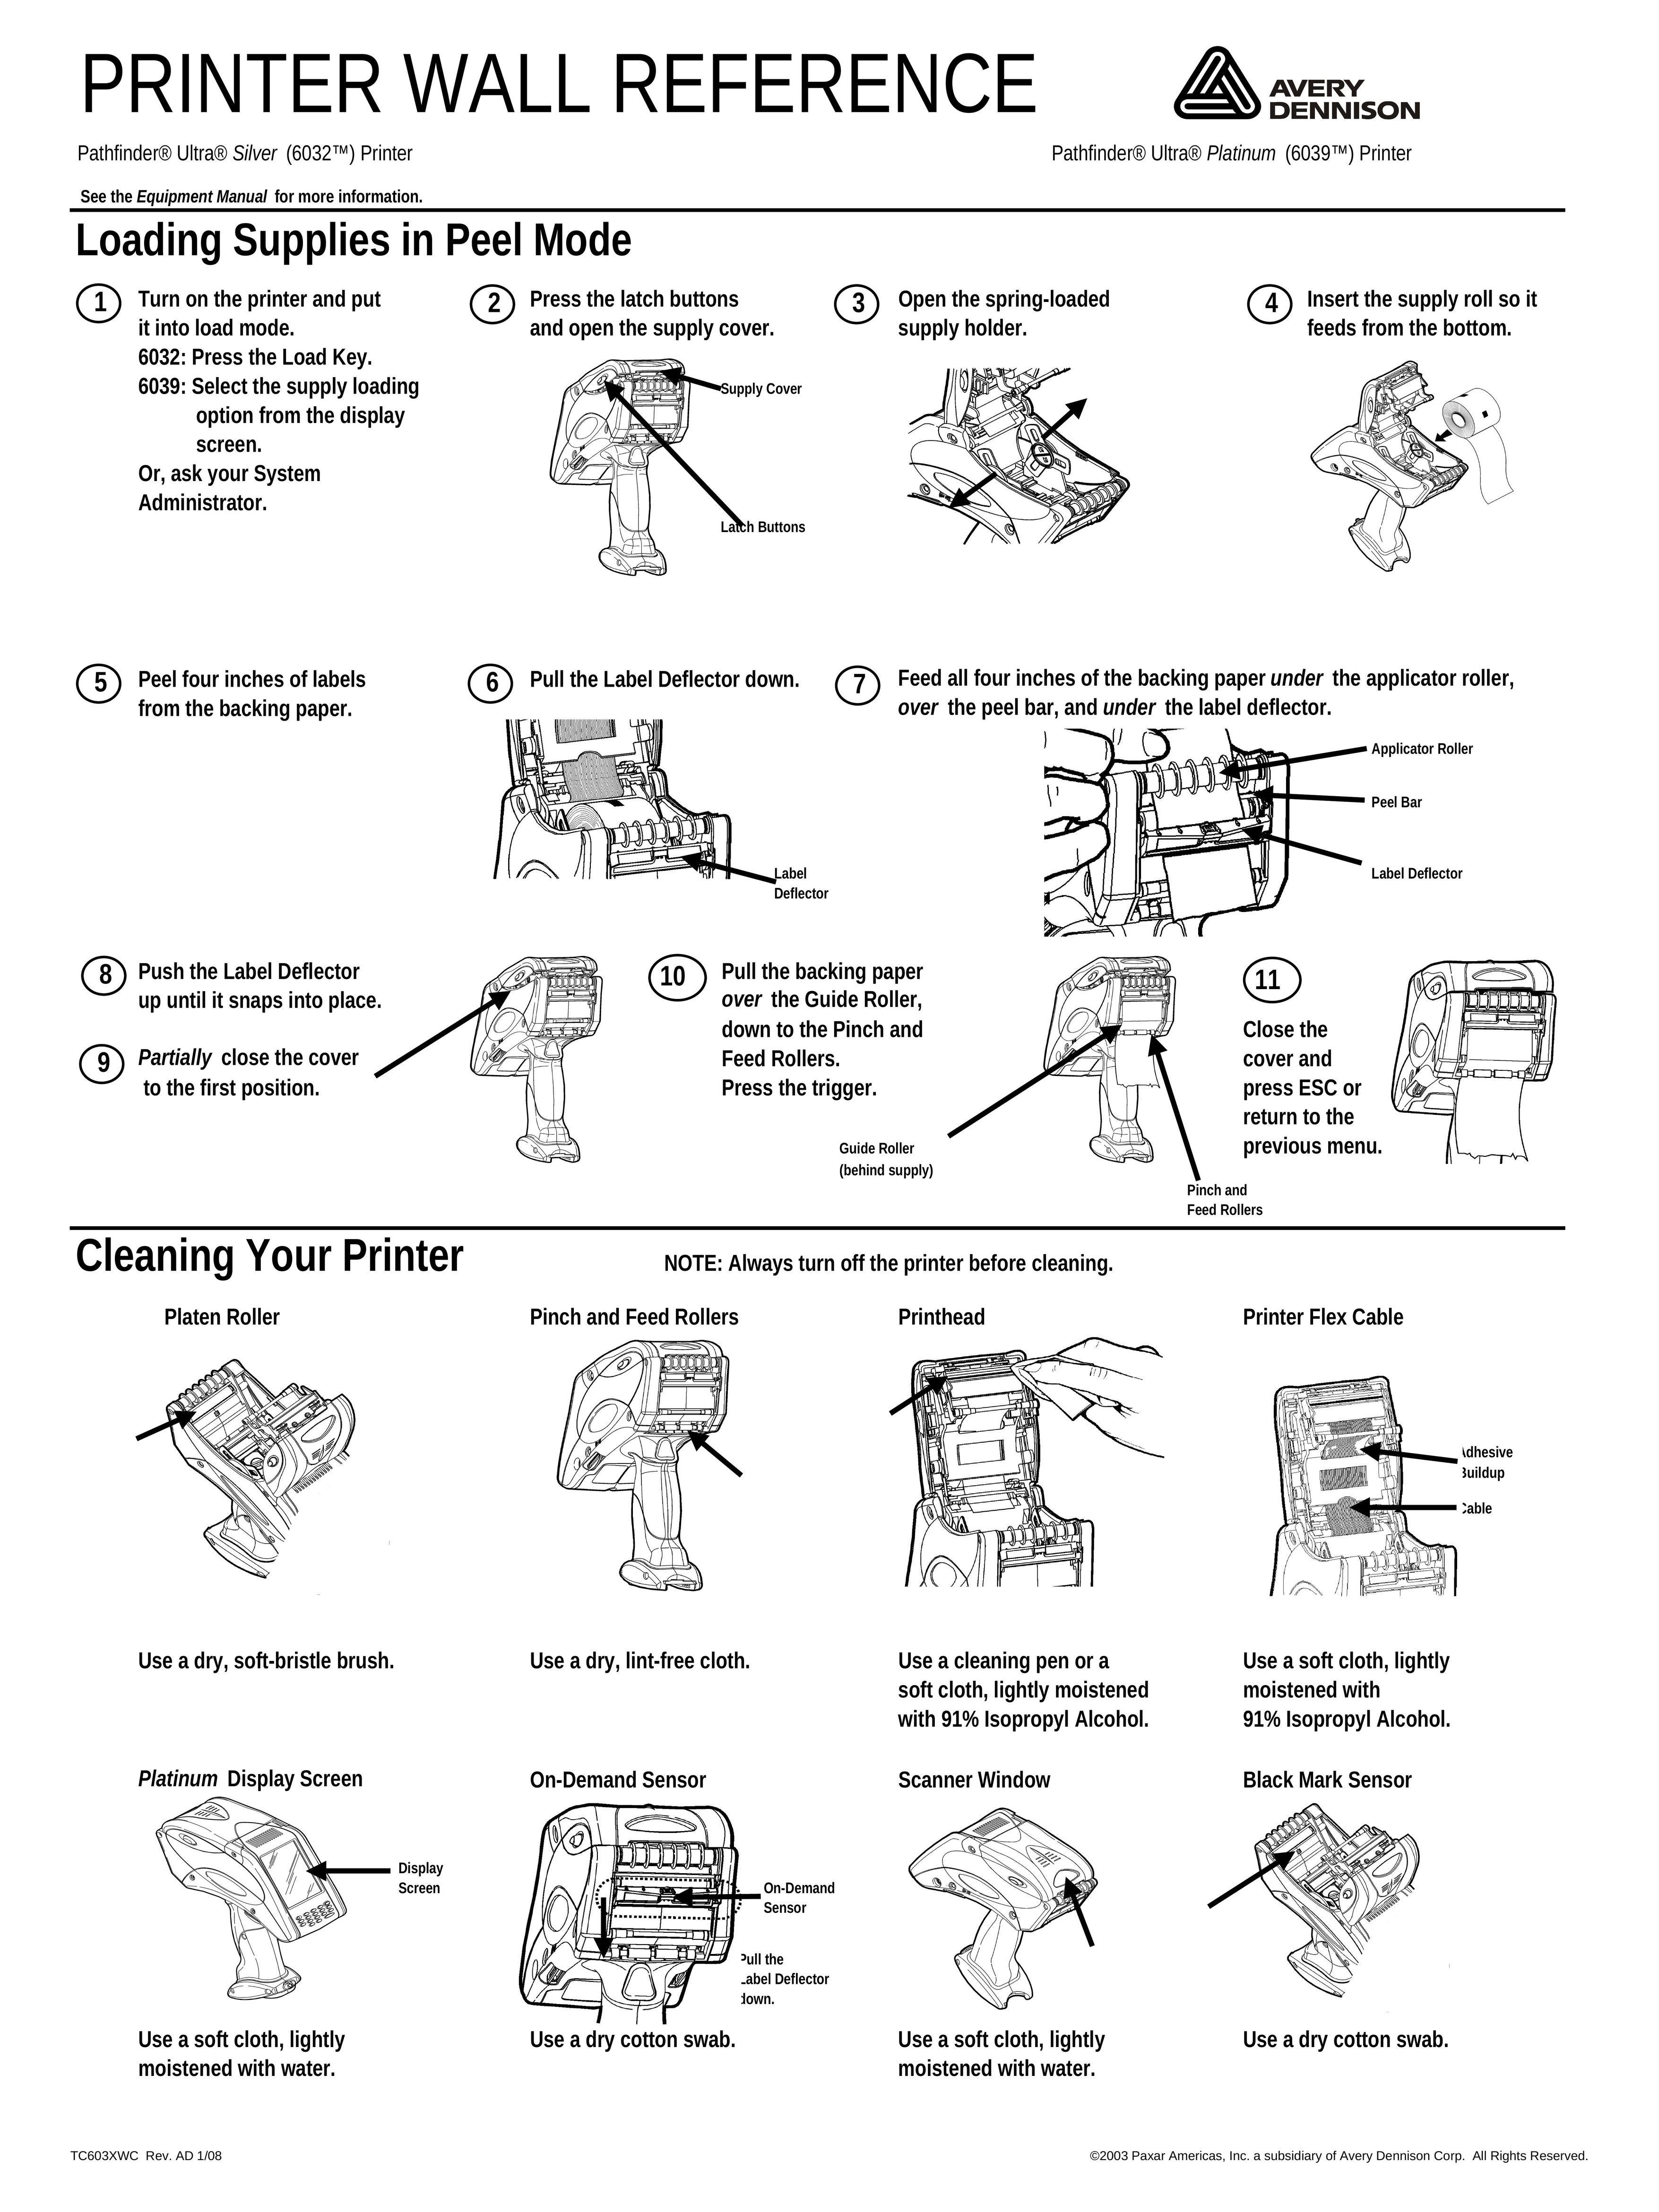 Paxar 6032TM Printer User Manual